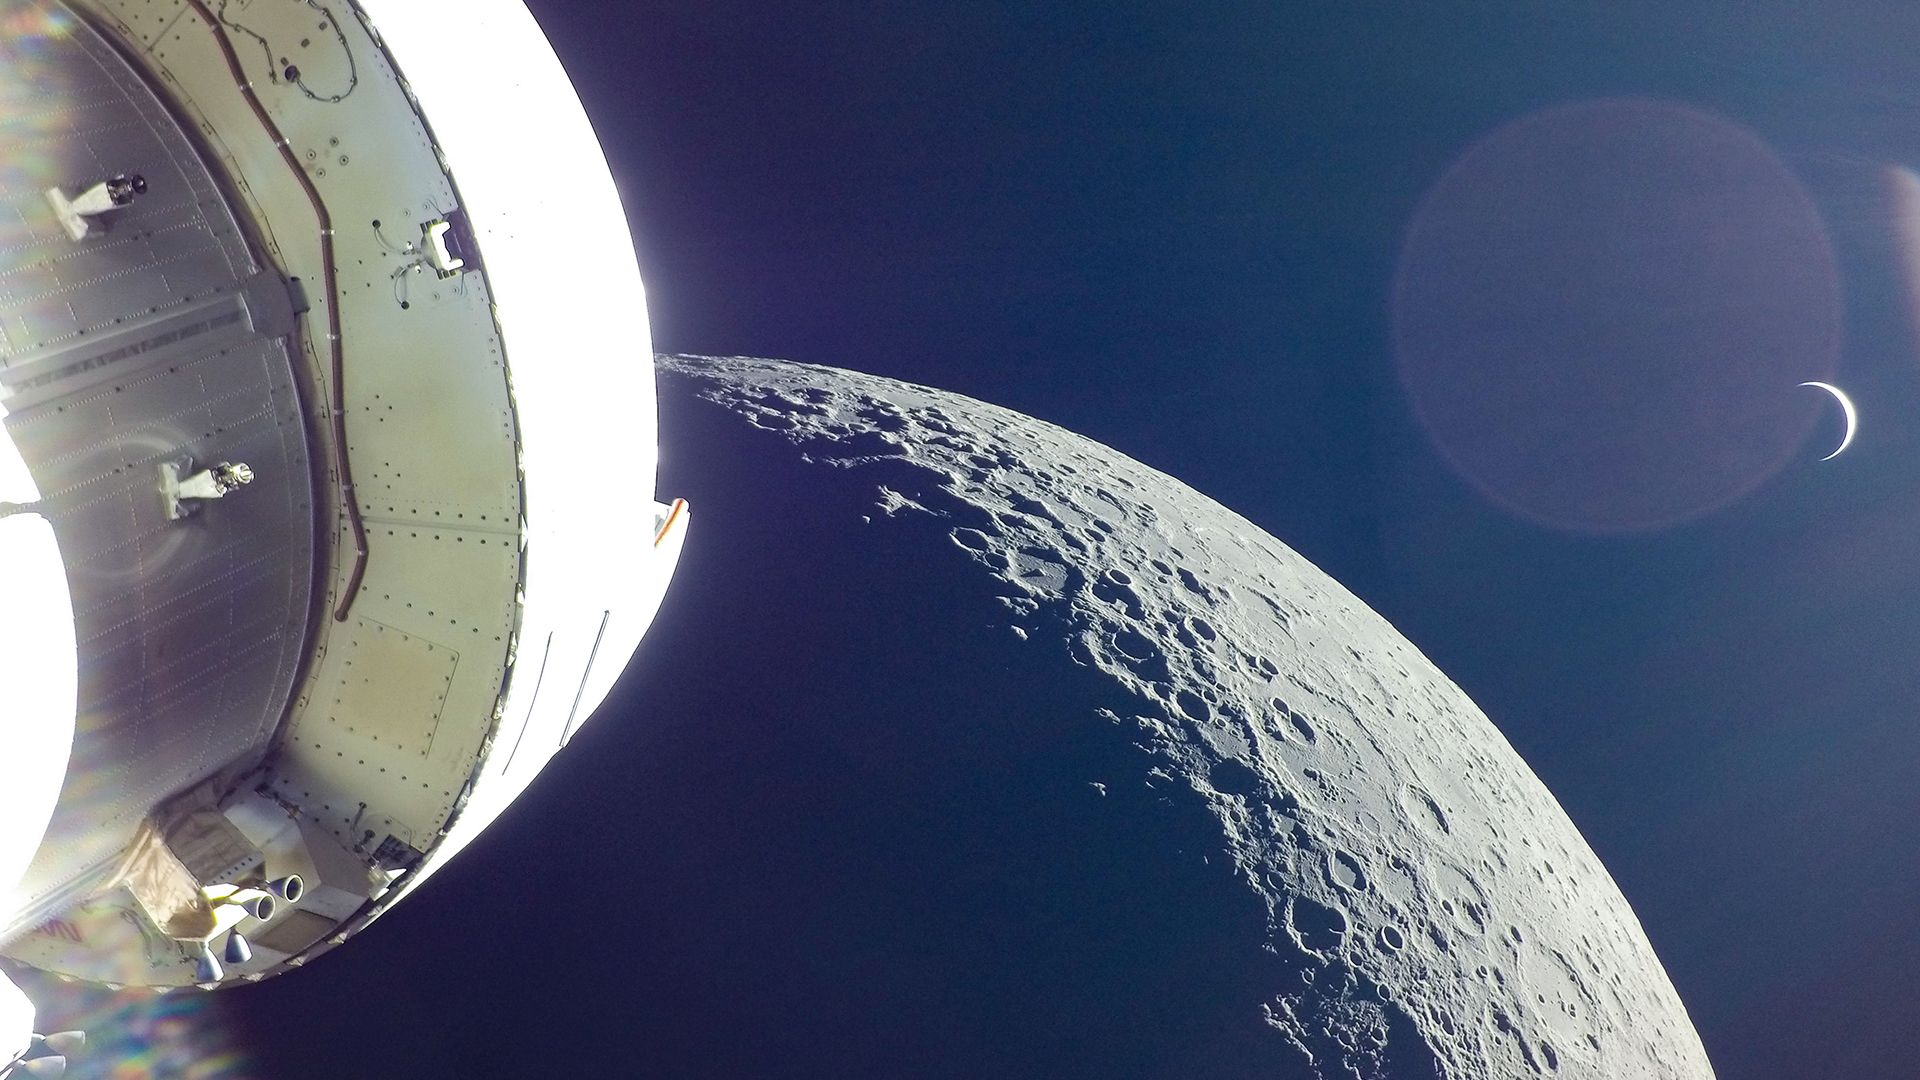 مرجع متخصصين ايران ماه از نگاه فضاپيماي اوريون